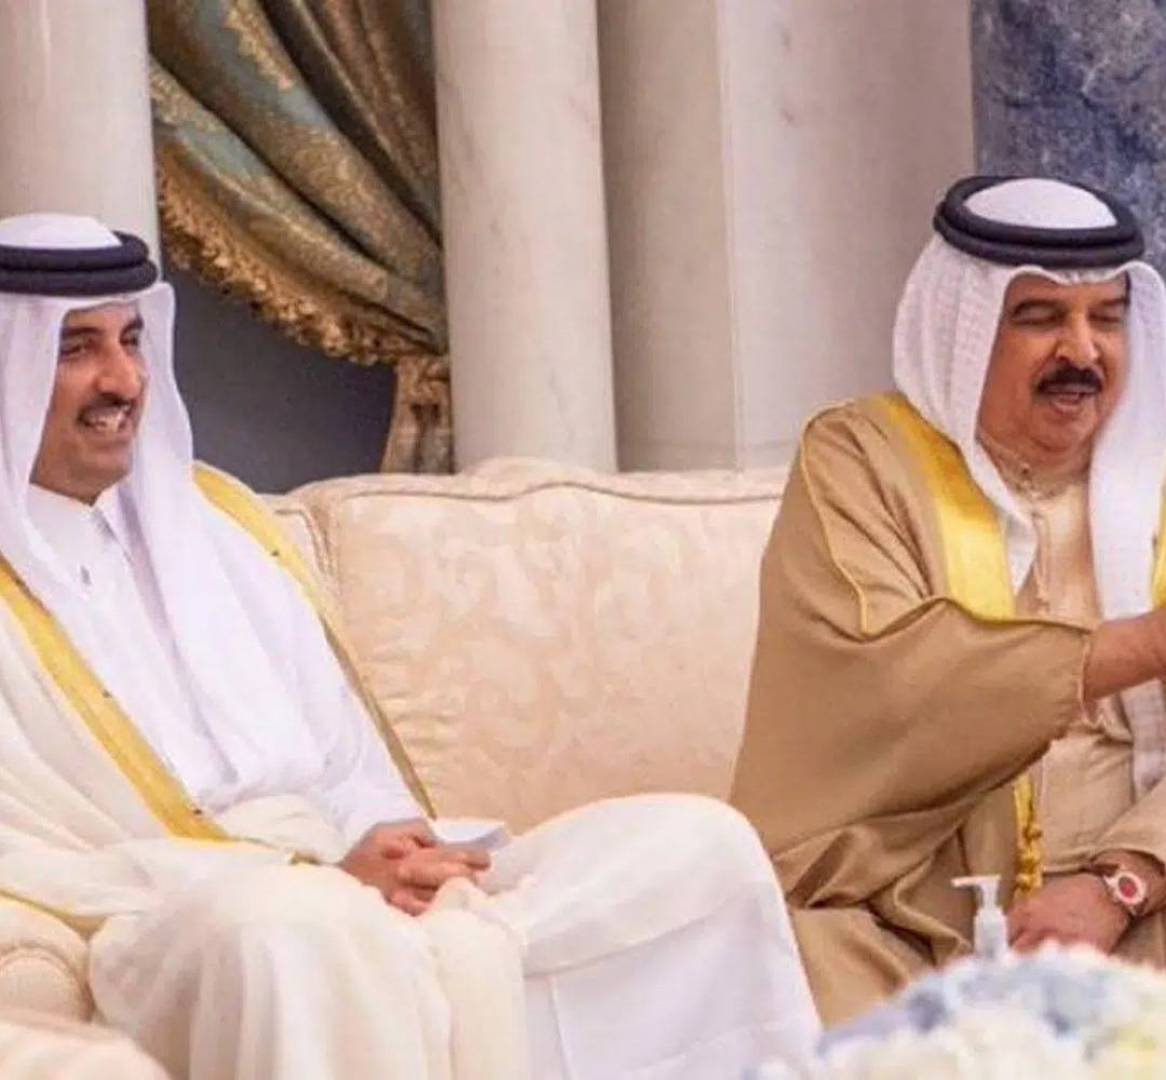 صفحة جديدة بين البلدين...البحرين ترفع قطر من قائمة الدول المحظورة